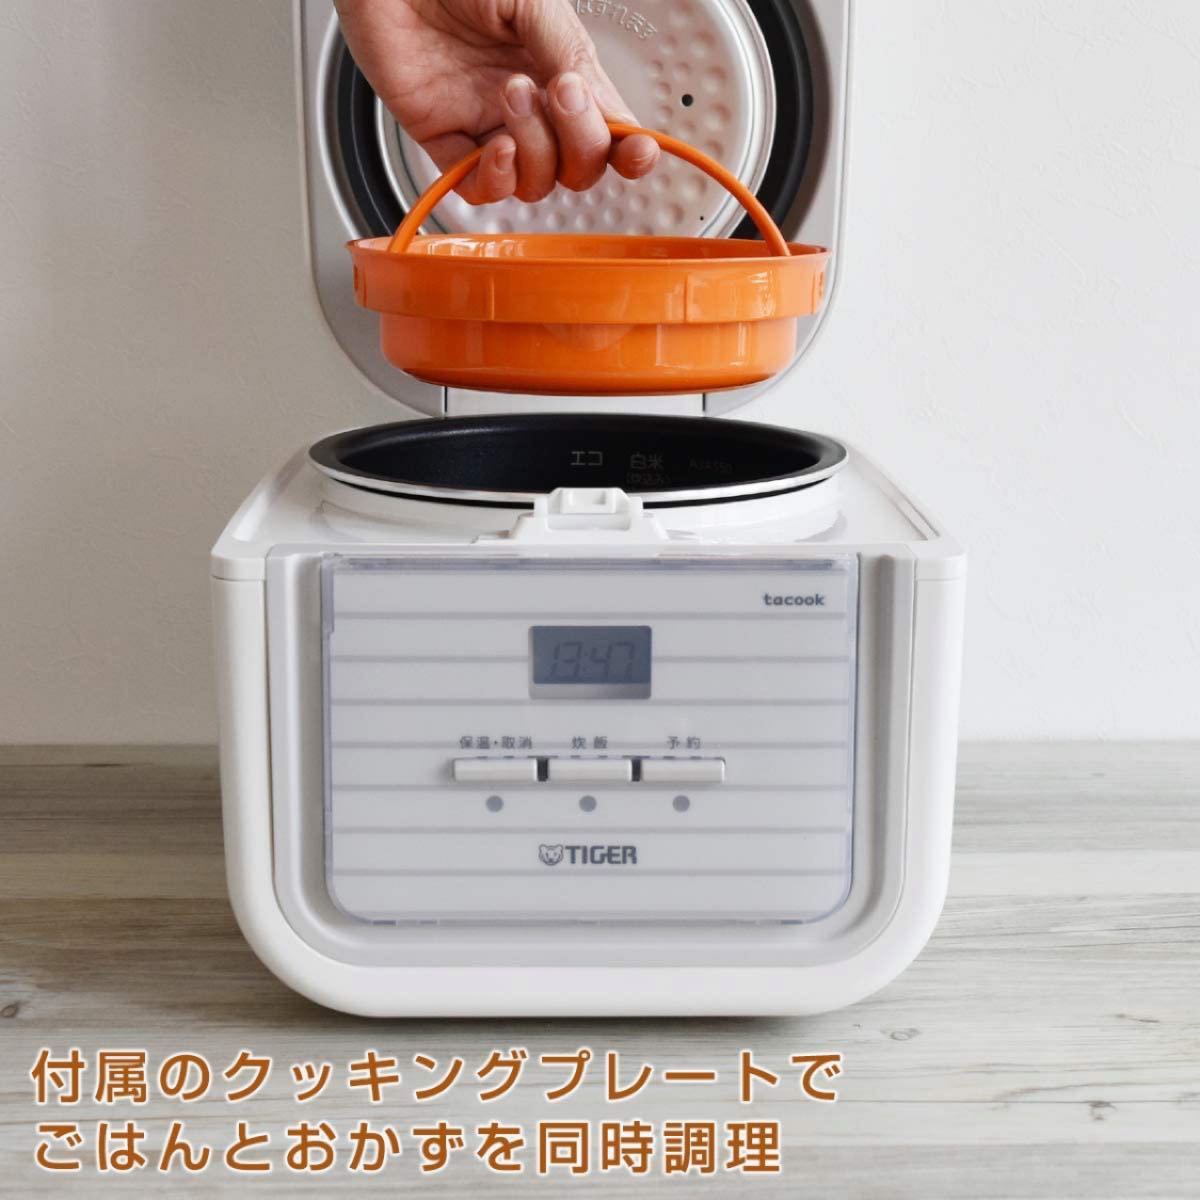 タイガーマイコン炊飯ジャー tacook 炊飯器3合